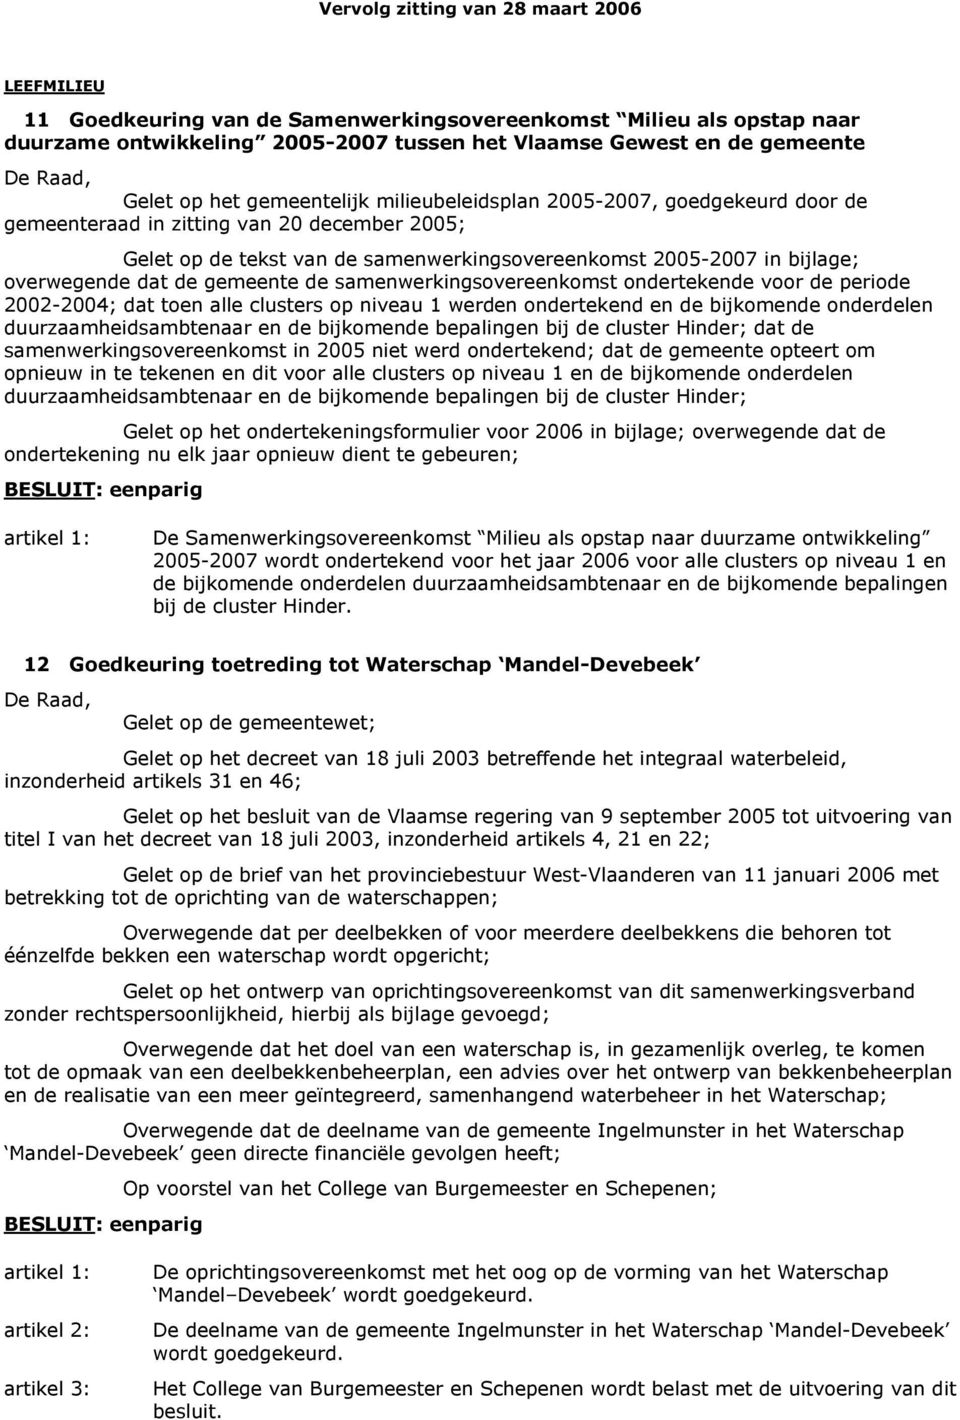 samenwerkingsovereenkomst ondertekende voor de periode 2002-2004; dat toen alle clusters op niveau 1 werden ondertekend en de bijkomende onderdelen duurzaamheidsambtenaar en de bijkomende bepalingen